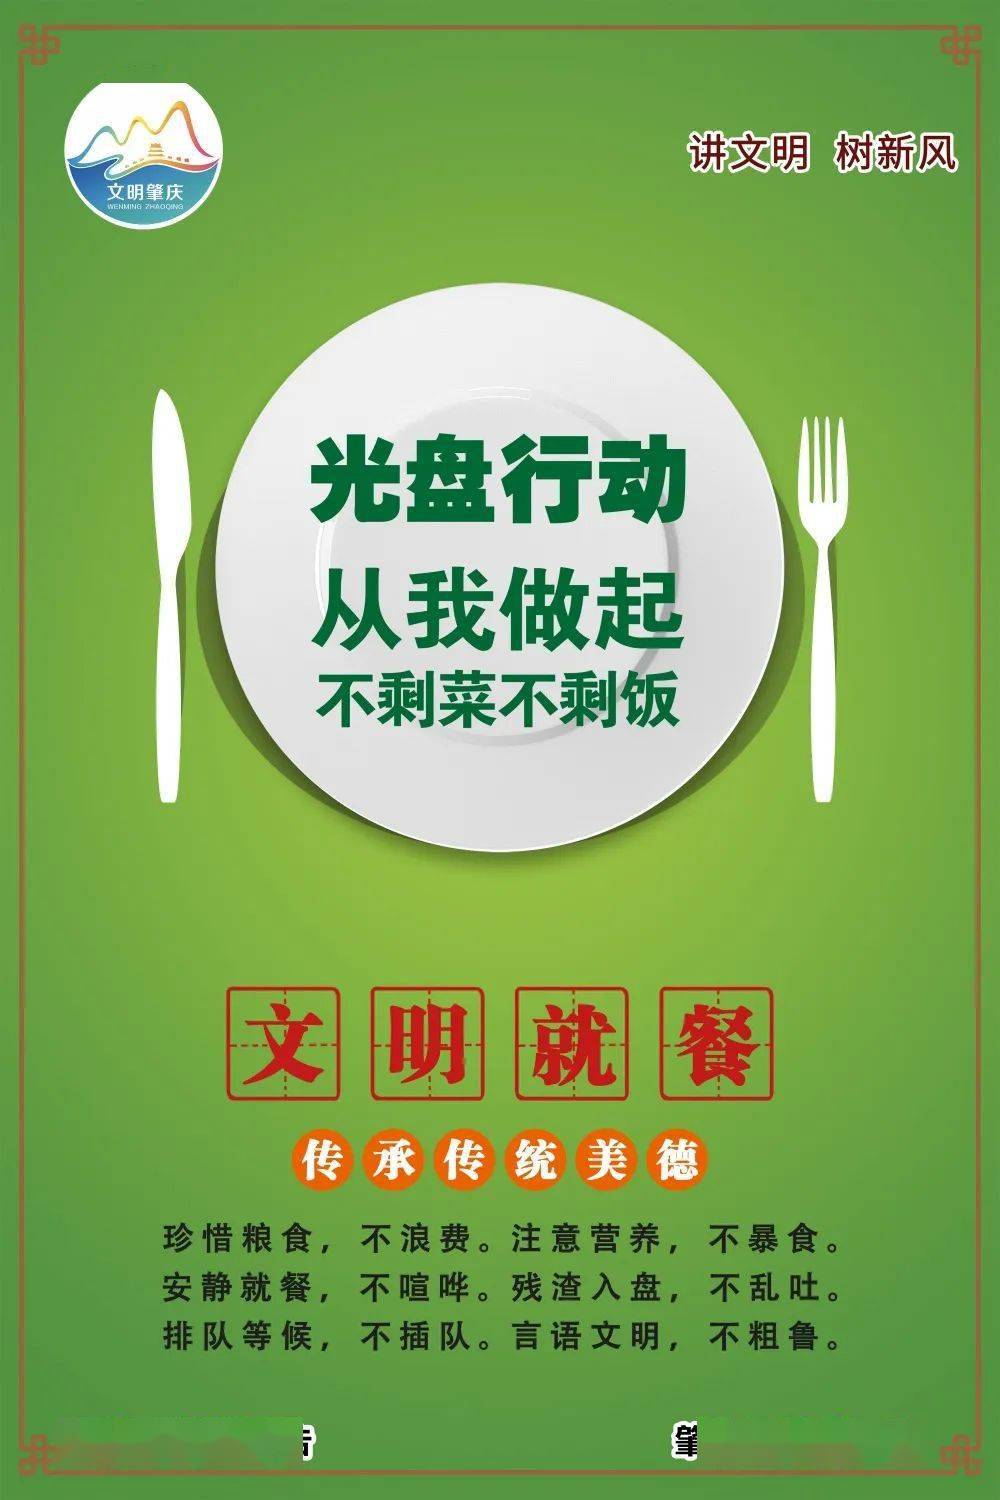 文明健康绿色环保丨肇庆市开展制止餐饮浪费行为弘扬勤俭节约美德活动